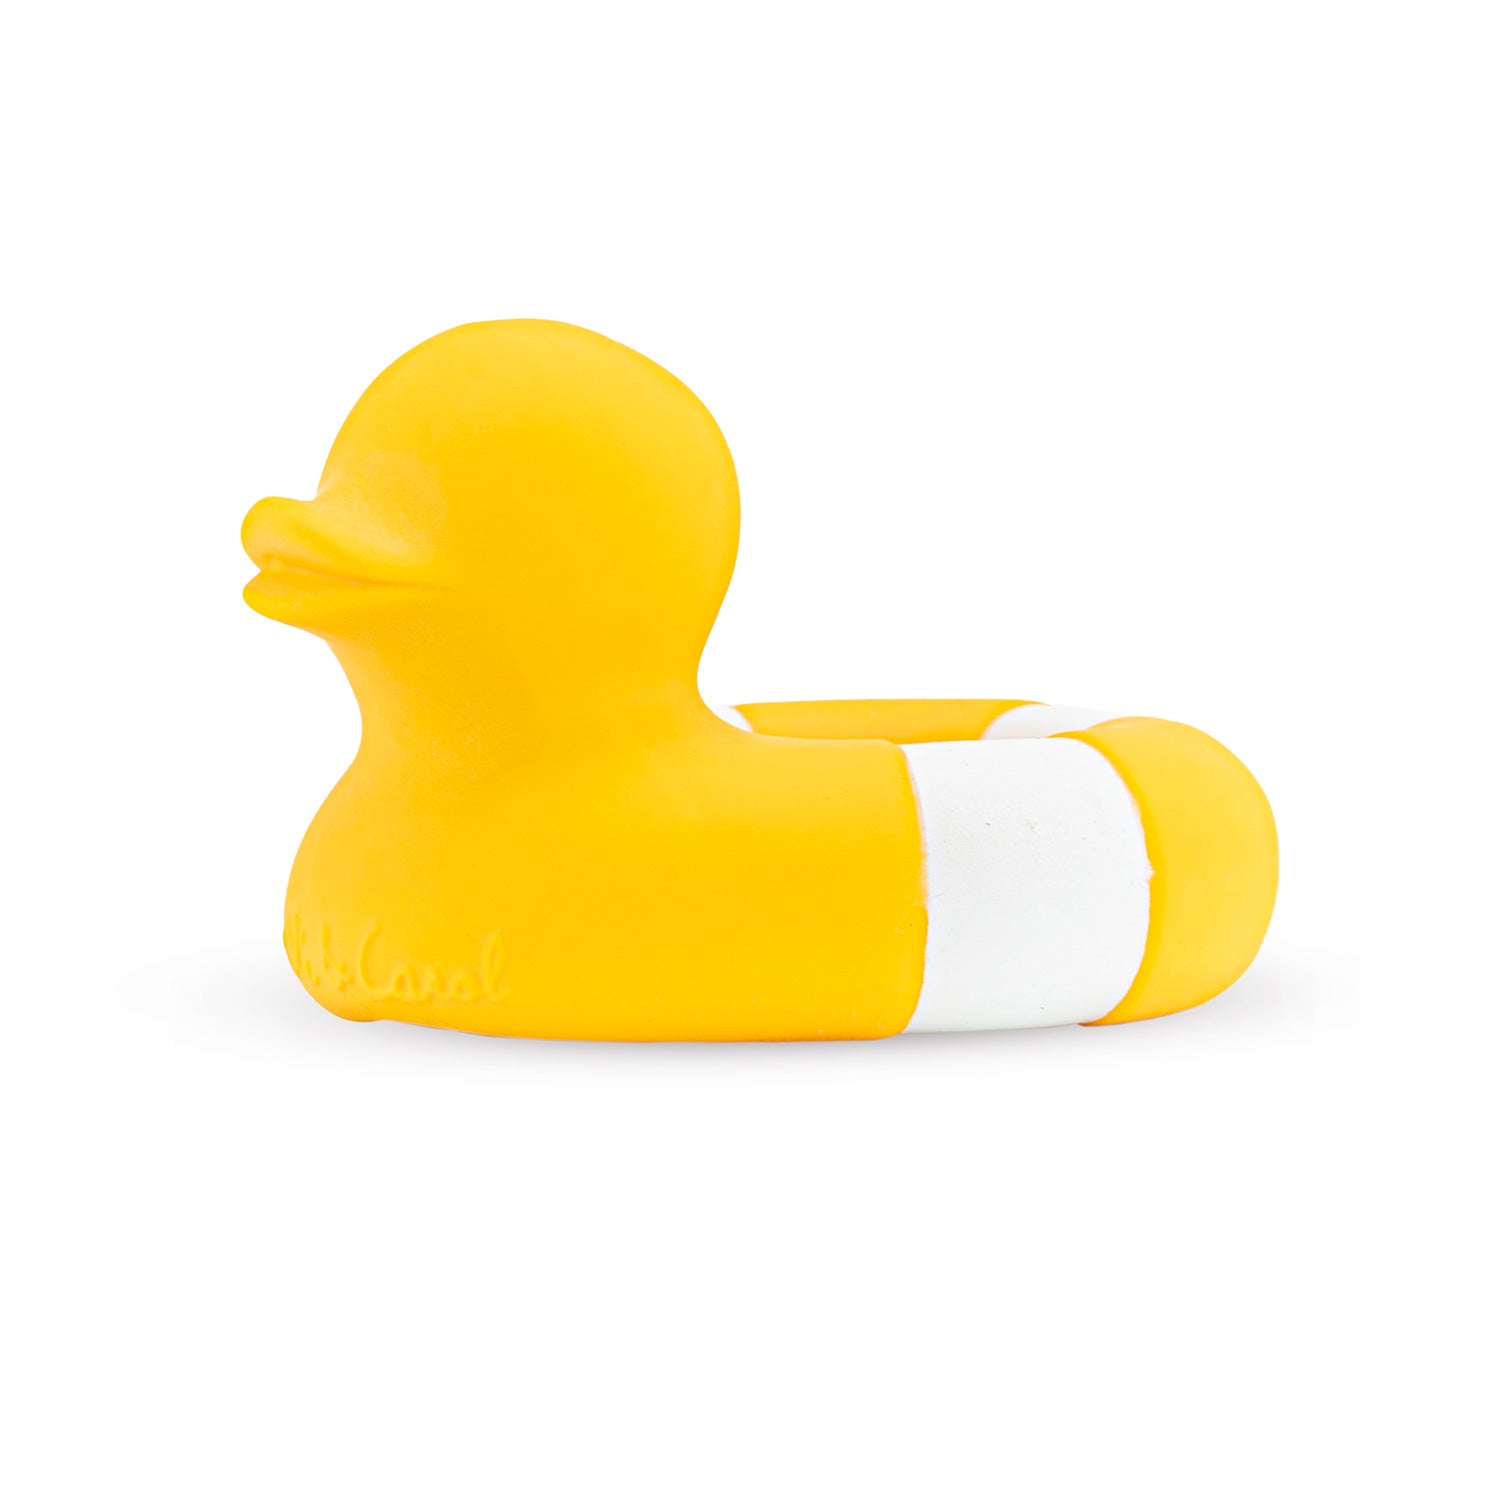 Flo the Floatie Yellow Bath Toy - Oli&Carol